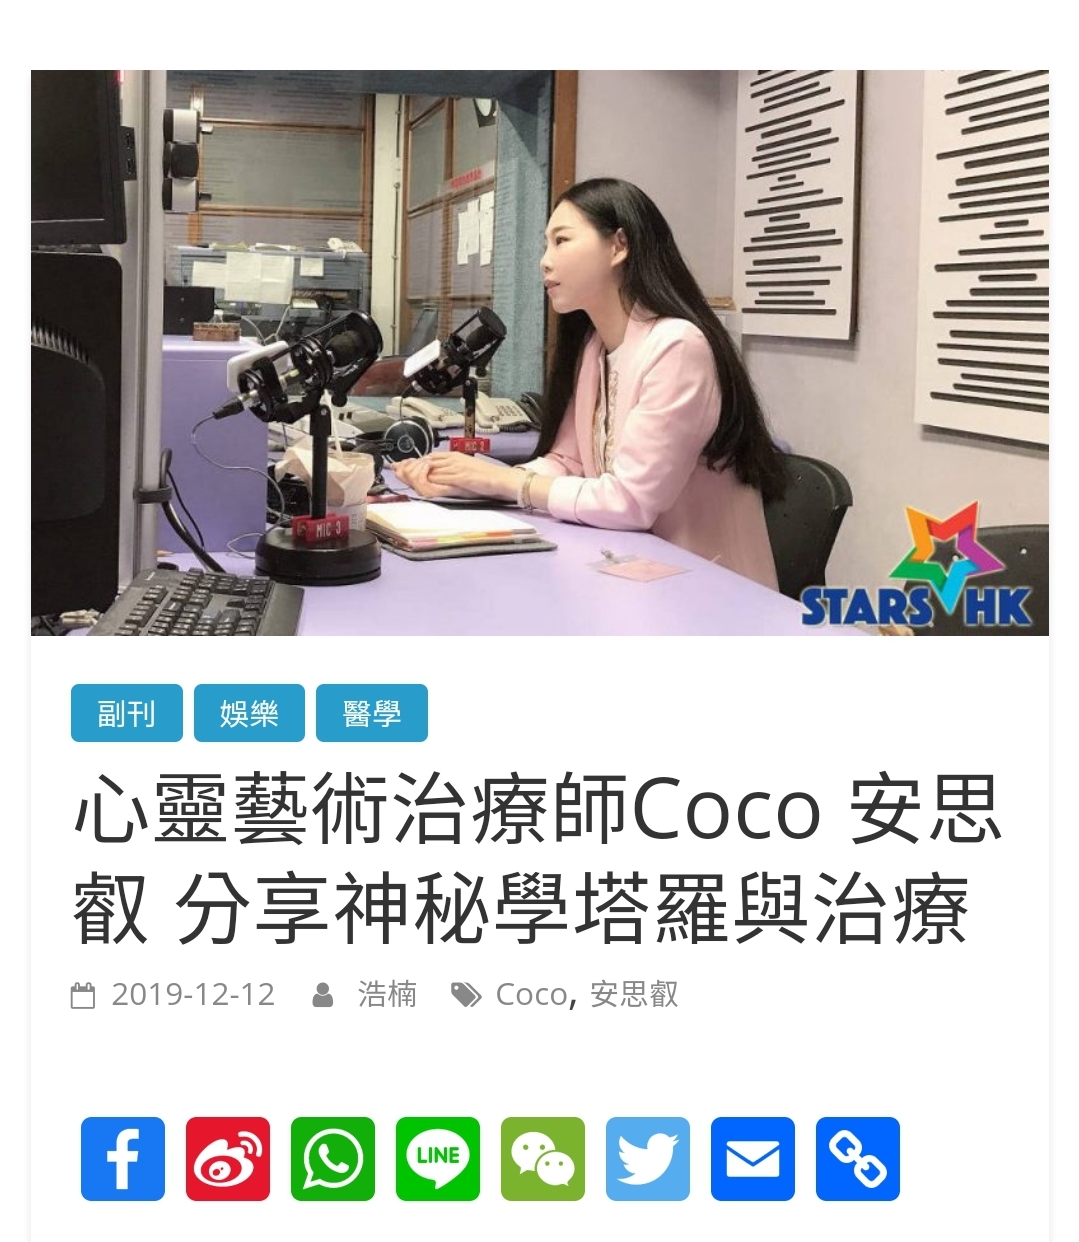 Coco • LoveSpirit  風水師傳媒報導: 香港電台 [[ 分享神秘學塔羅與治療 ]] 